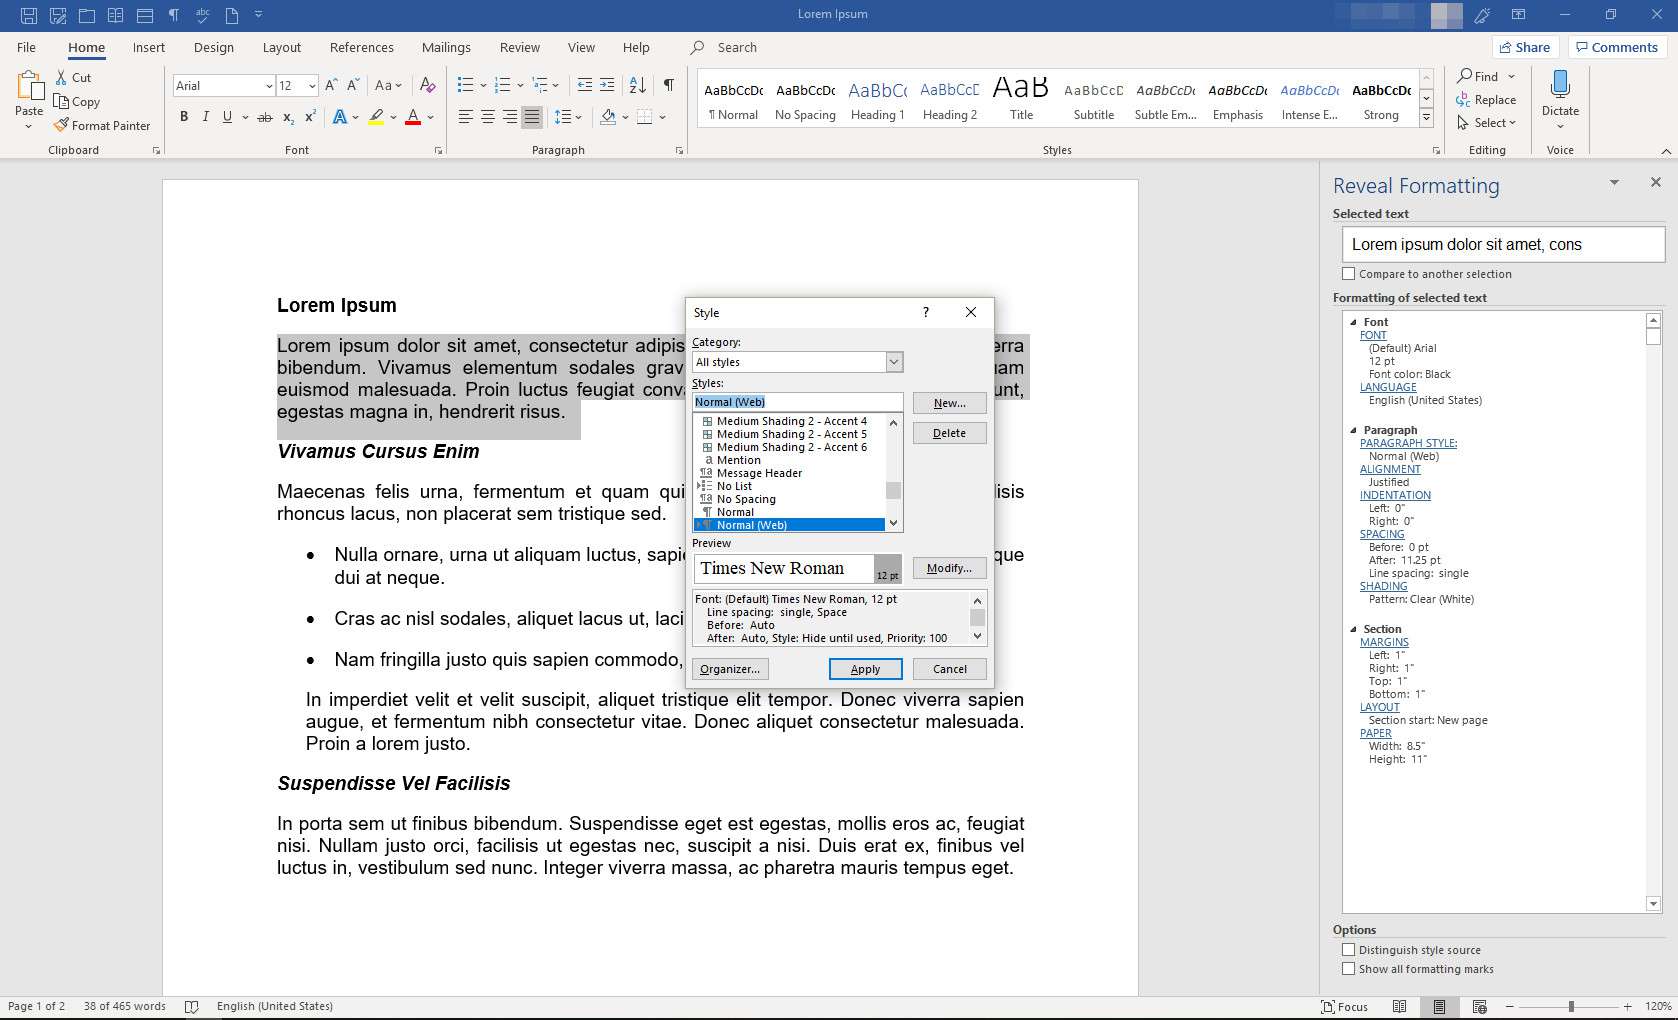 MS Word med panelen Reveal Formatting och dialogrutan Style visas